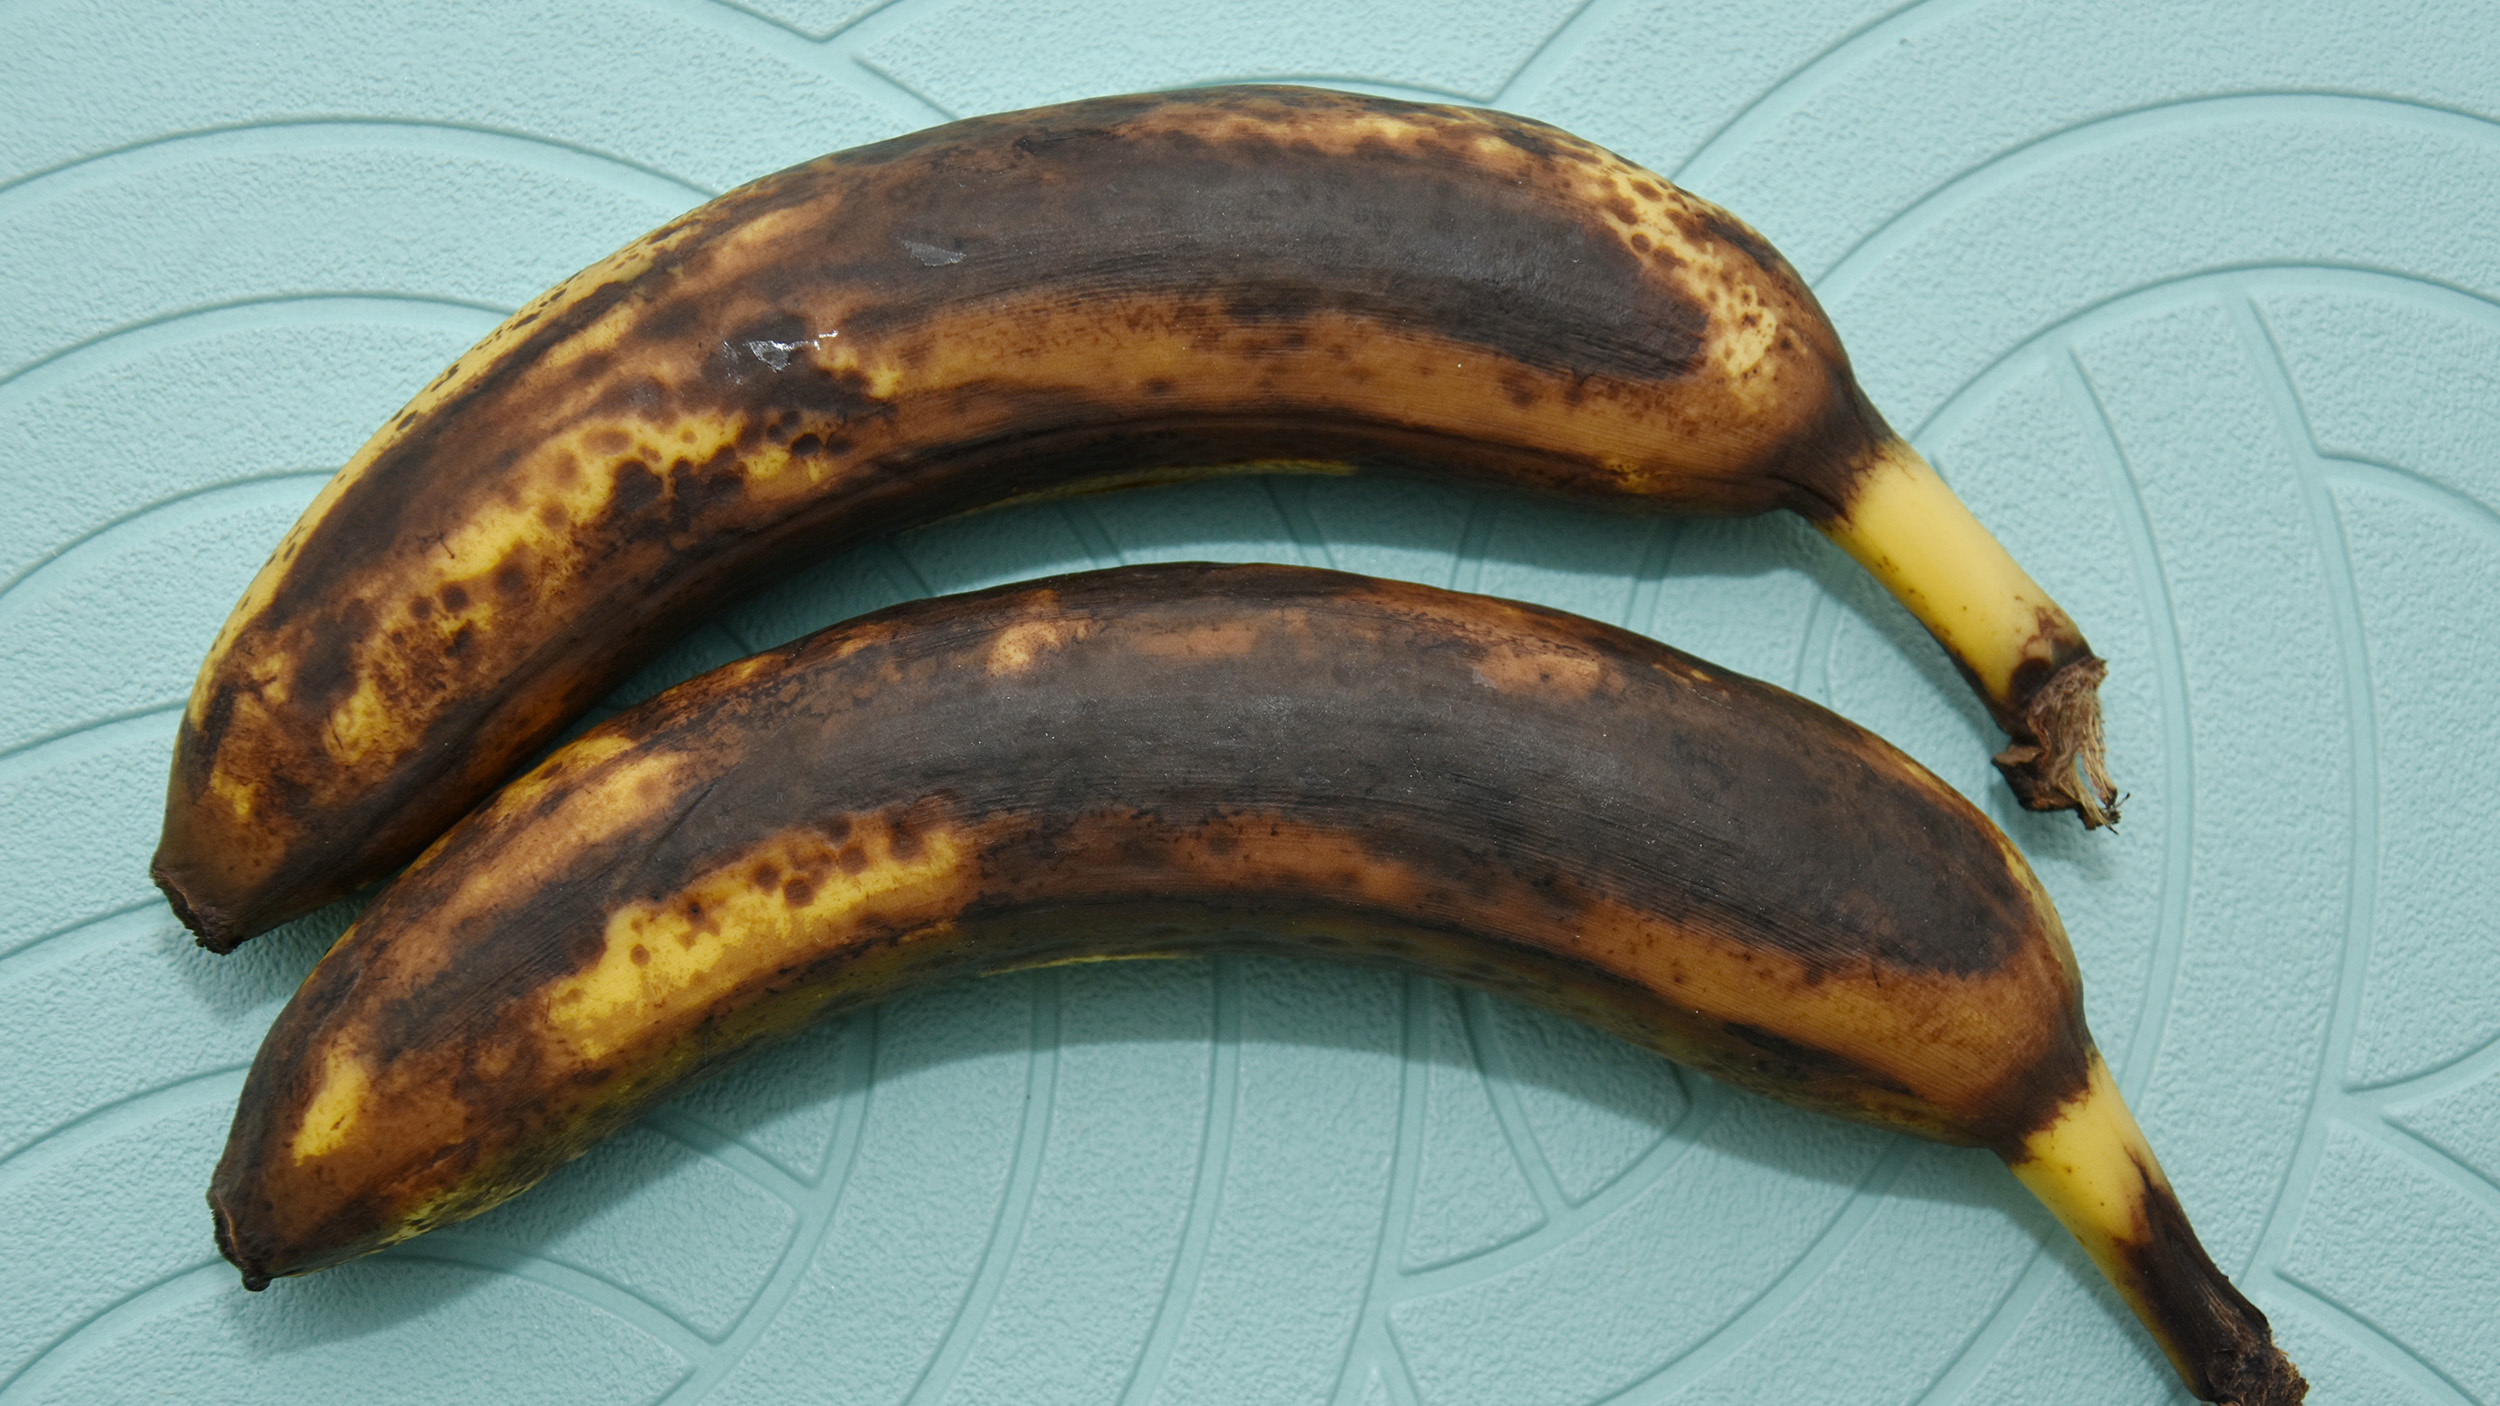 Lovely mature bananas.